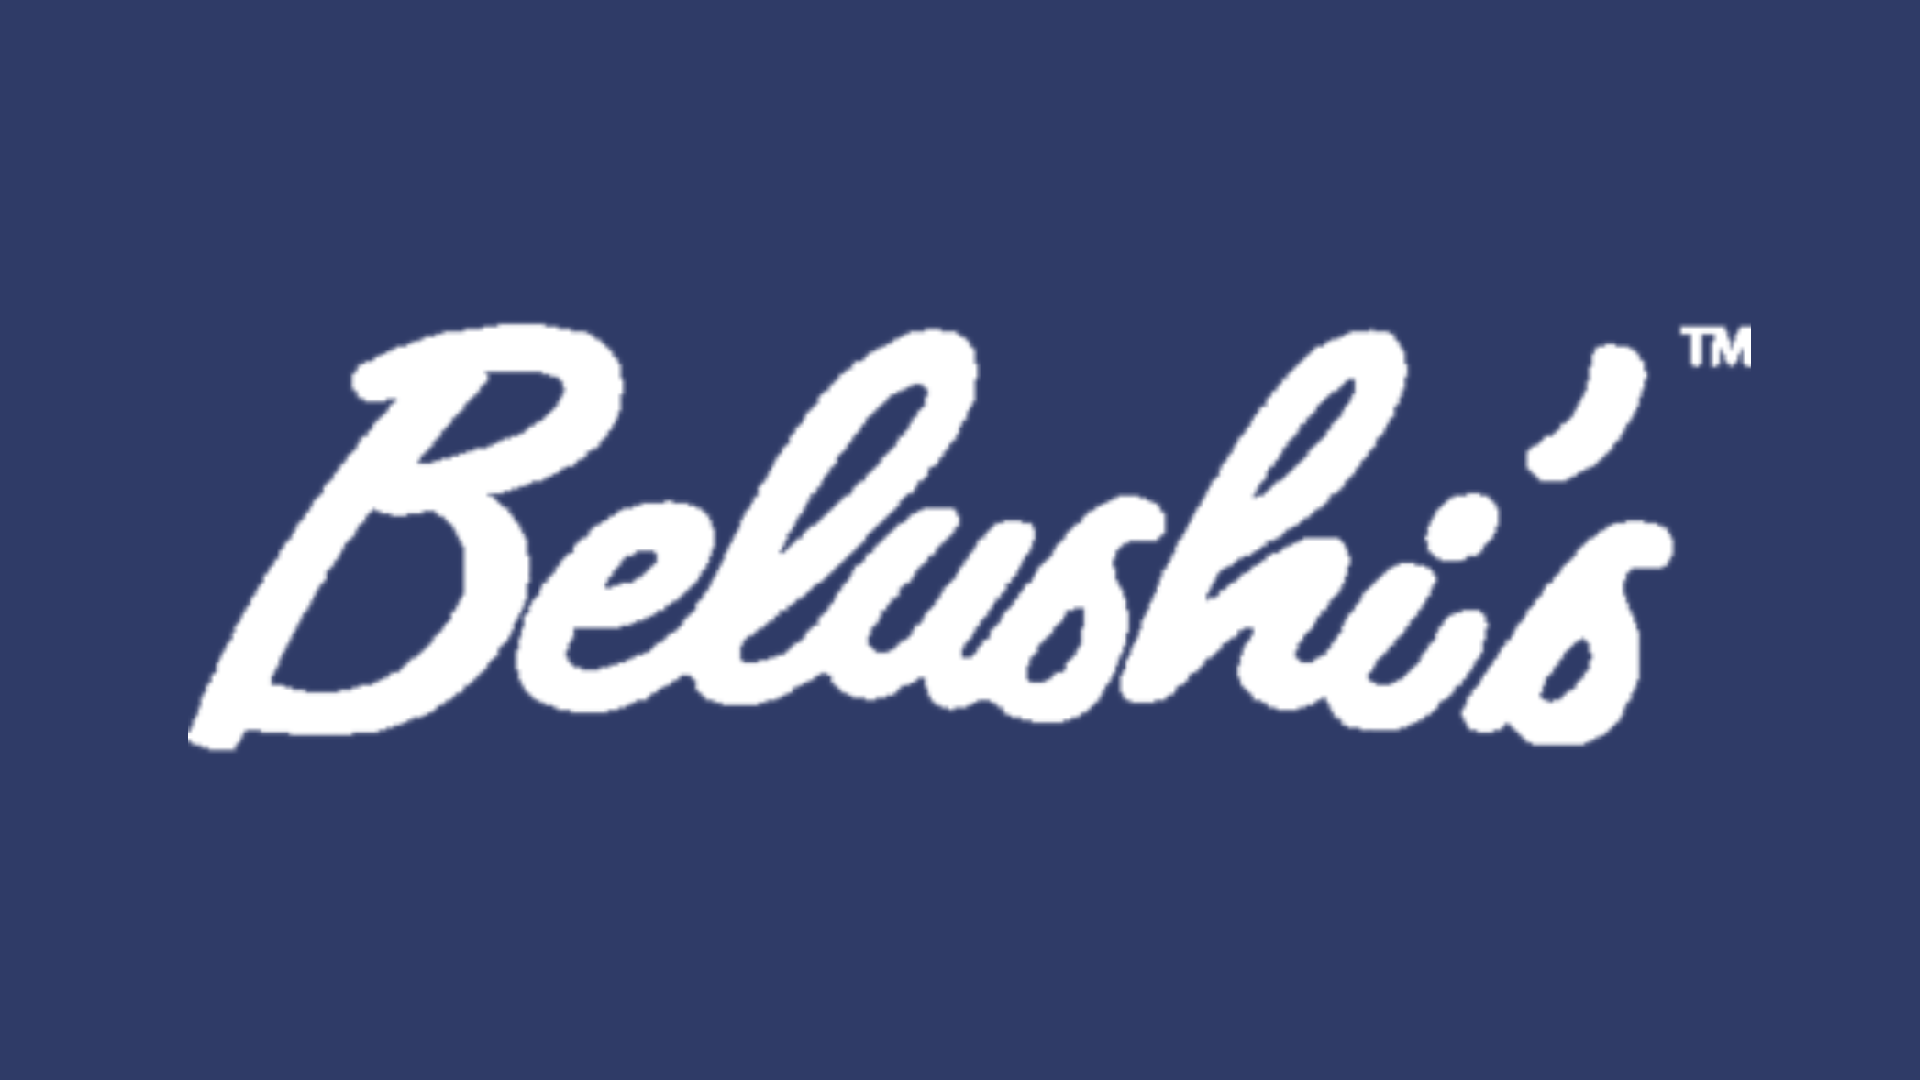 Belushi's sponsorship logo